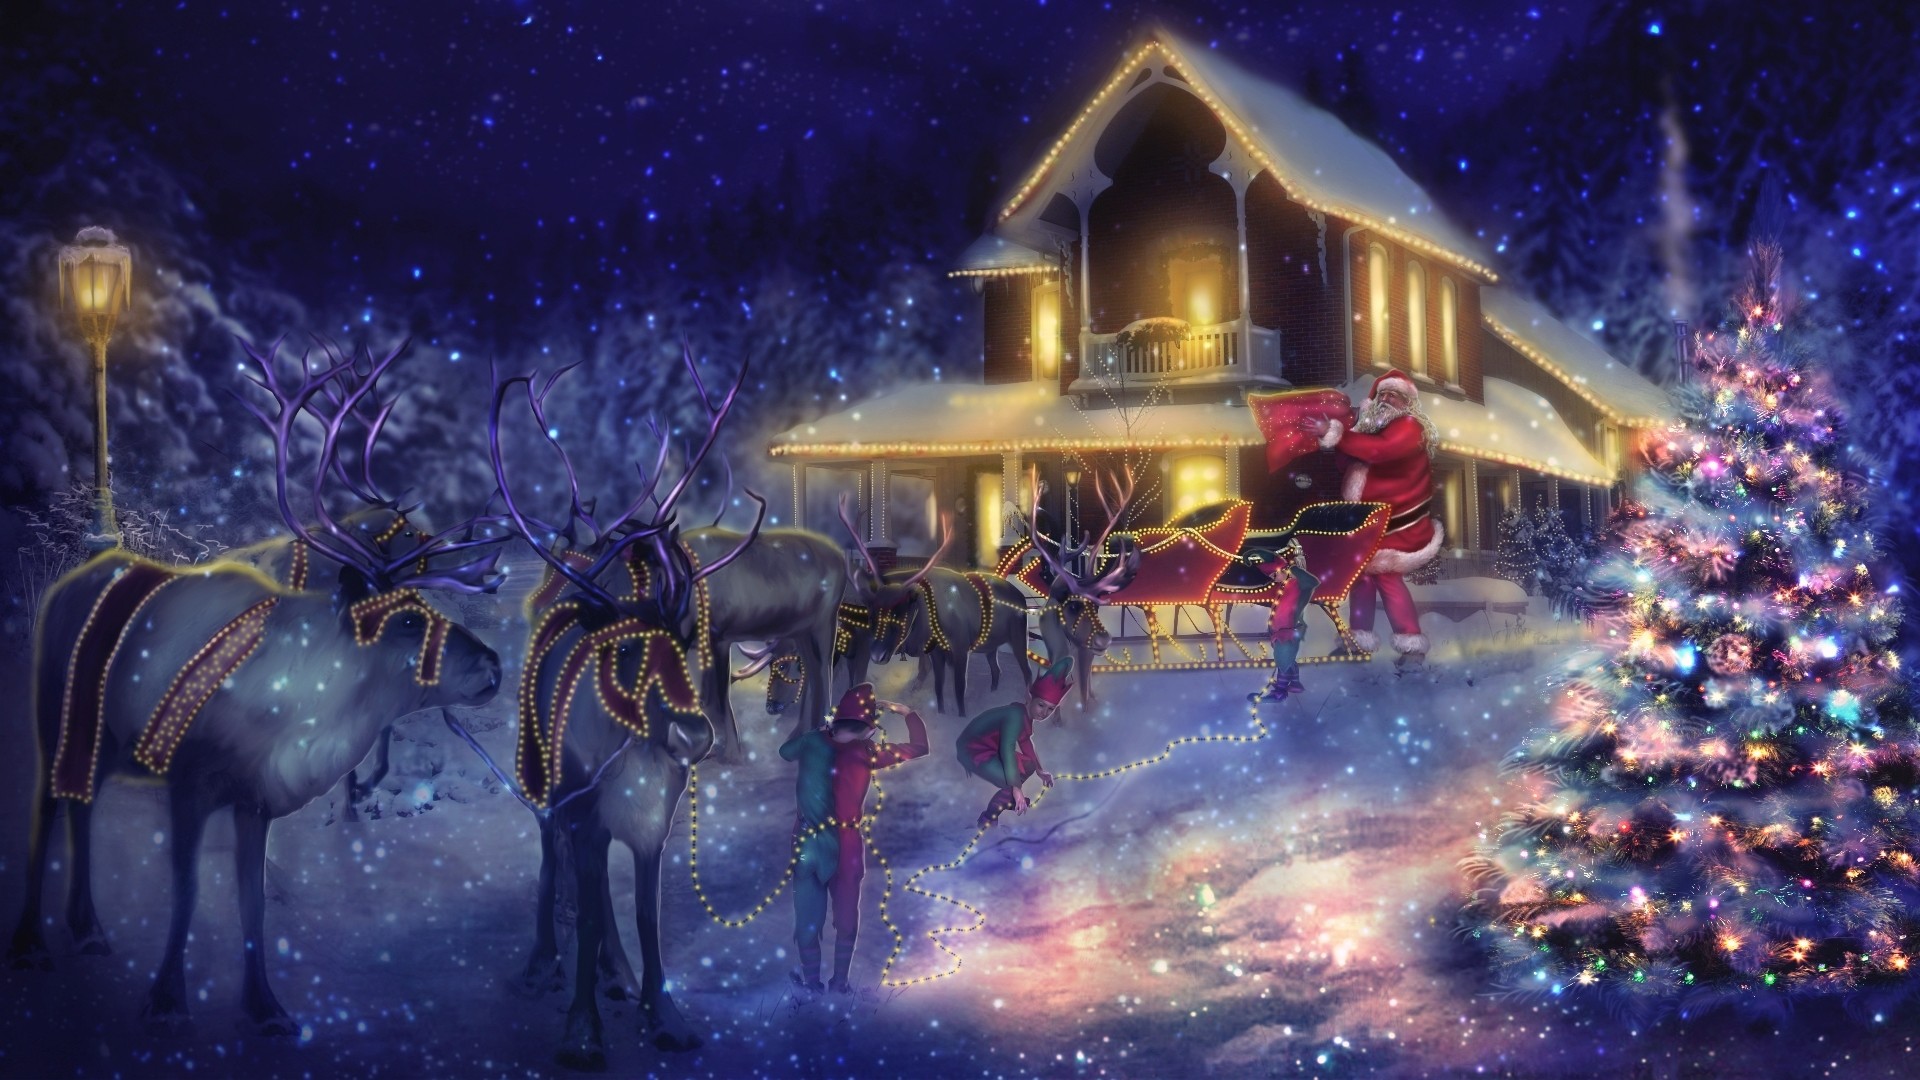 1920x1080 Holiday - Christmas Holiday Santa Reindeer Sleigh Christmas Tree Christmas  Lights Wallpaper